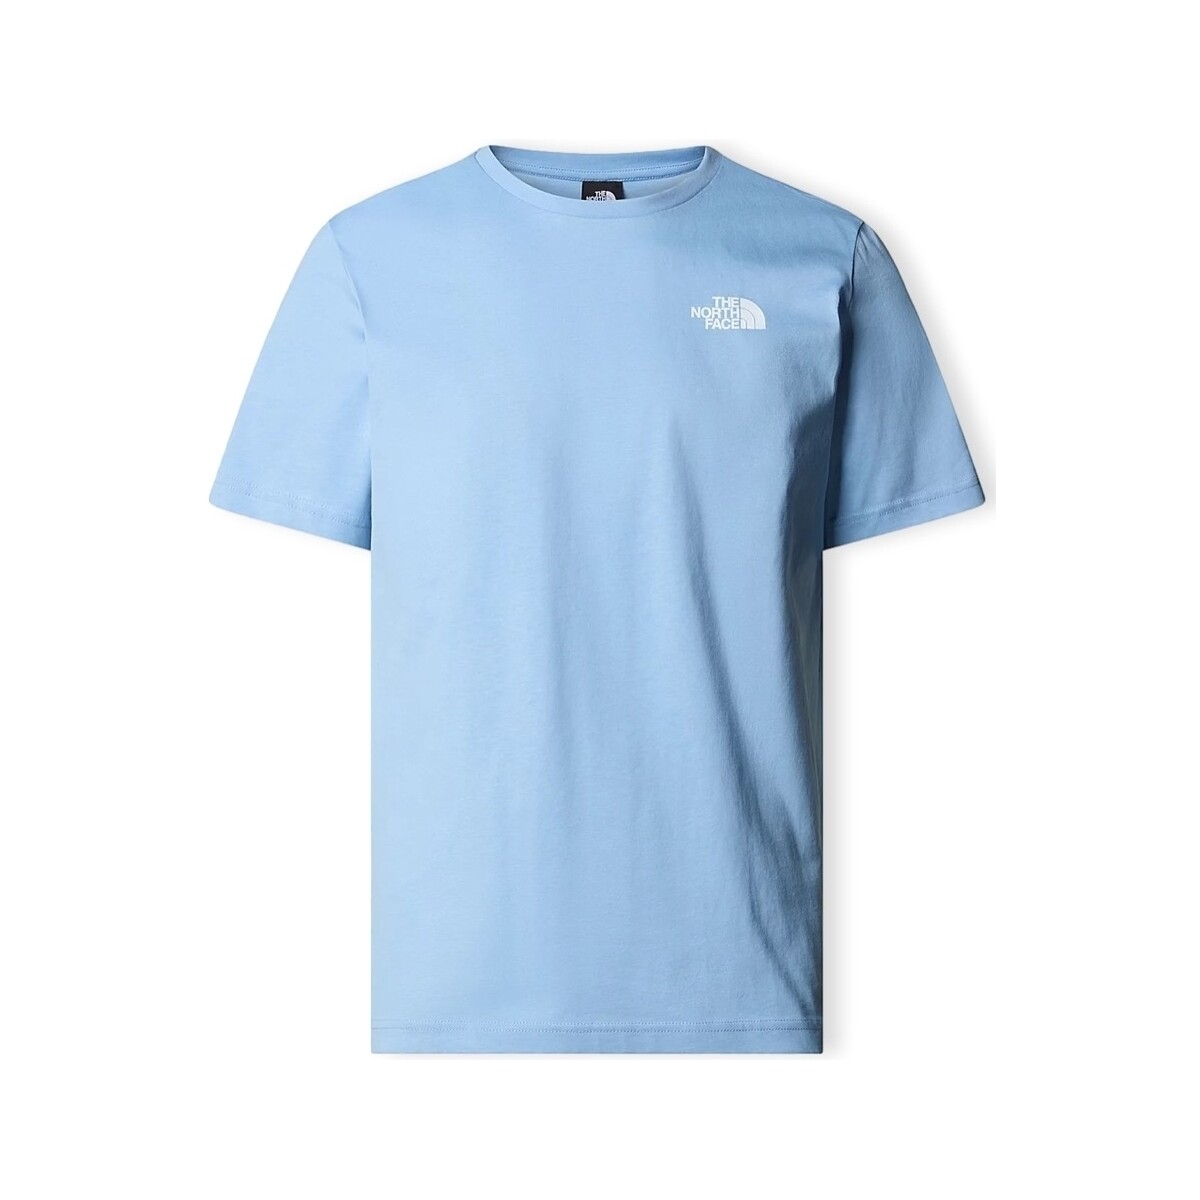 Ruhák Férfi Pólók / Galléros Pólók The North Face T-Shirt Redbox - Steel Blue Kék